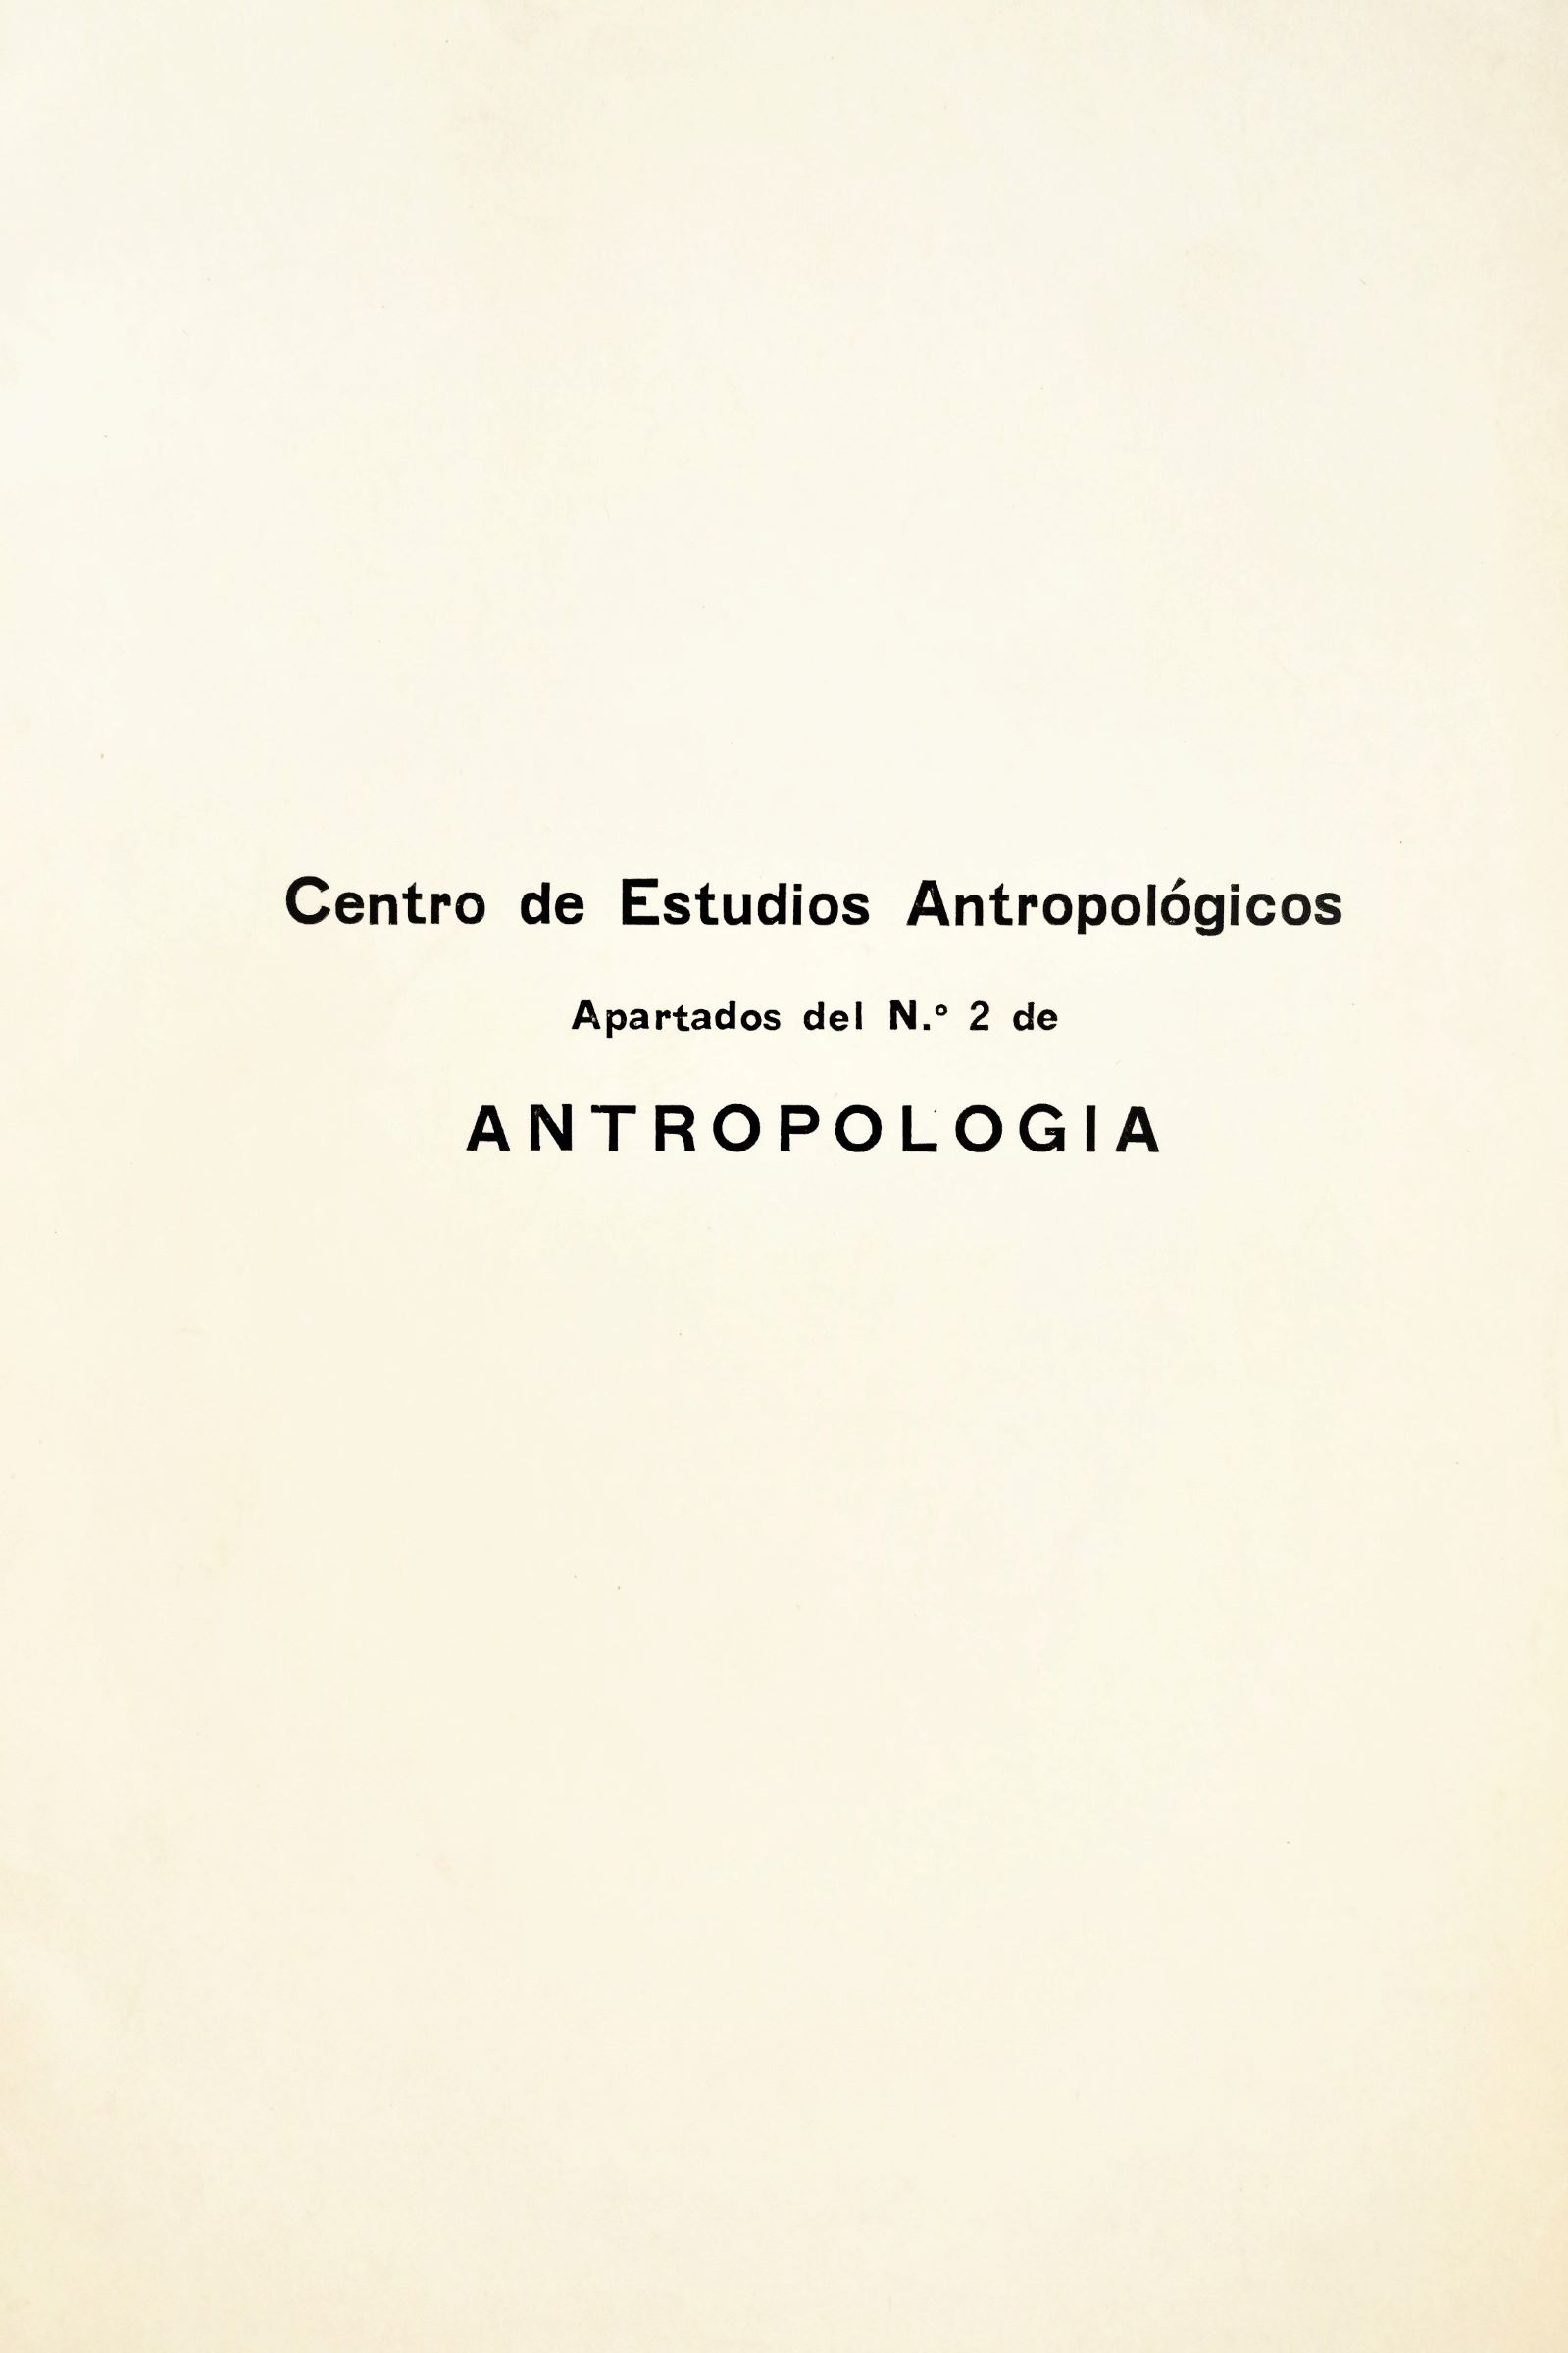 Mario Orellana R. - Acerca de la cronología del complejo cultural San Pedro de Atacama